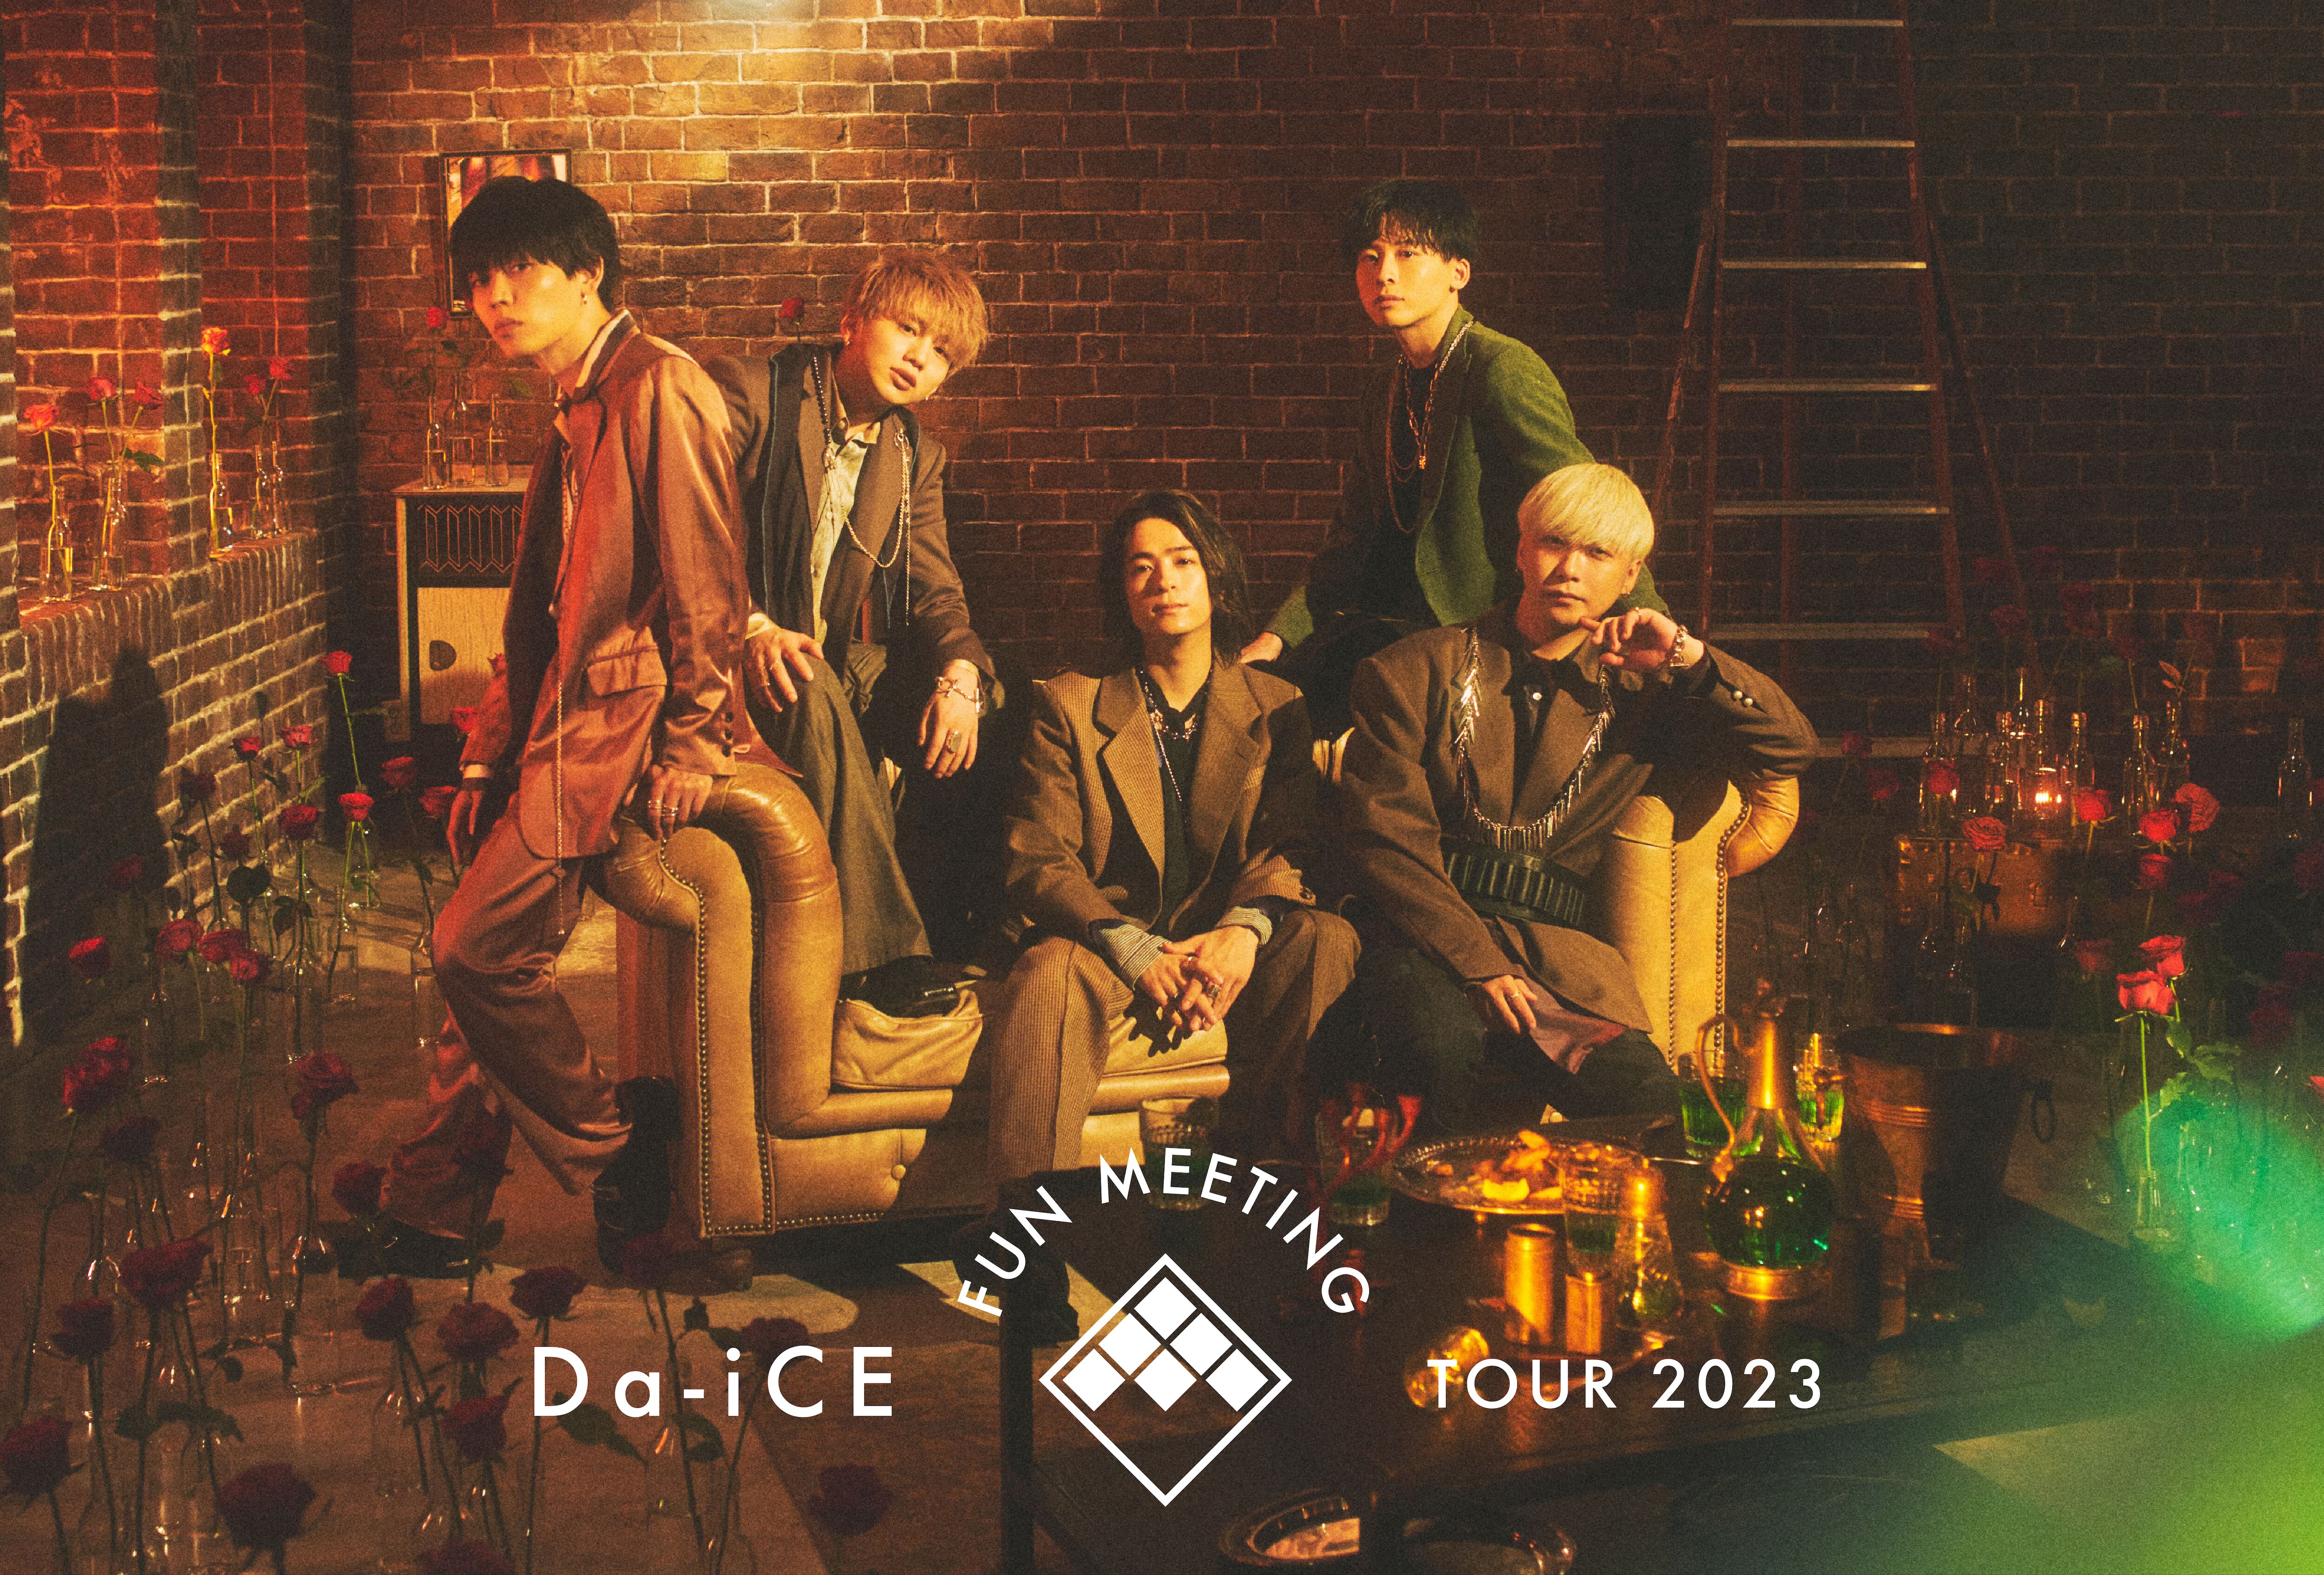 9都市18公演!!!「Da-iCE FUN MEETING TOUR 2023」開催決定!! - NEWS